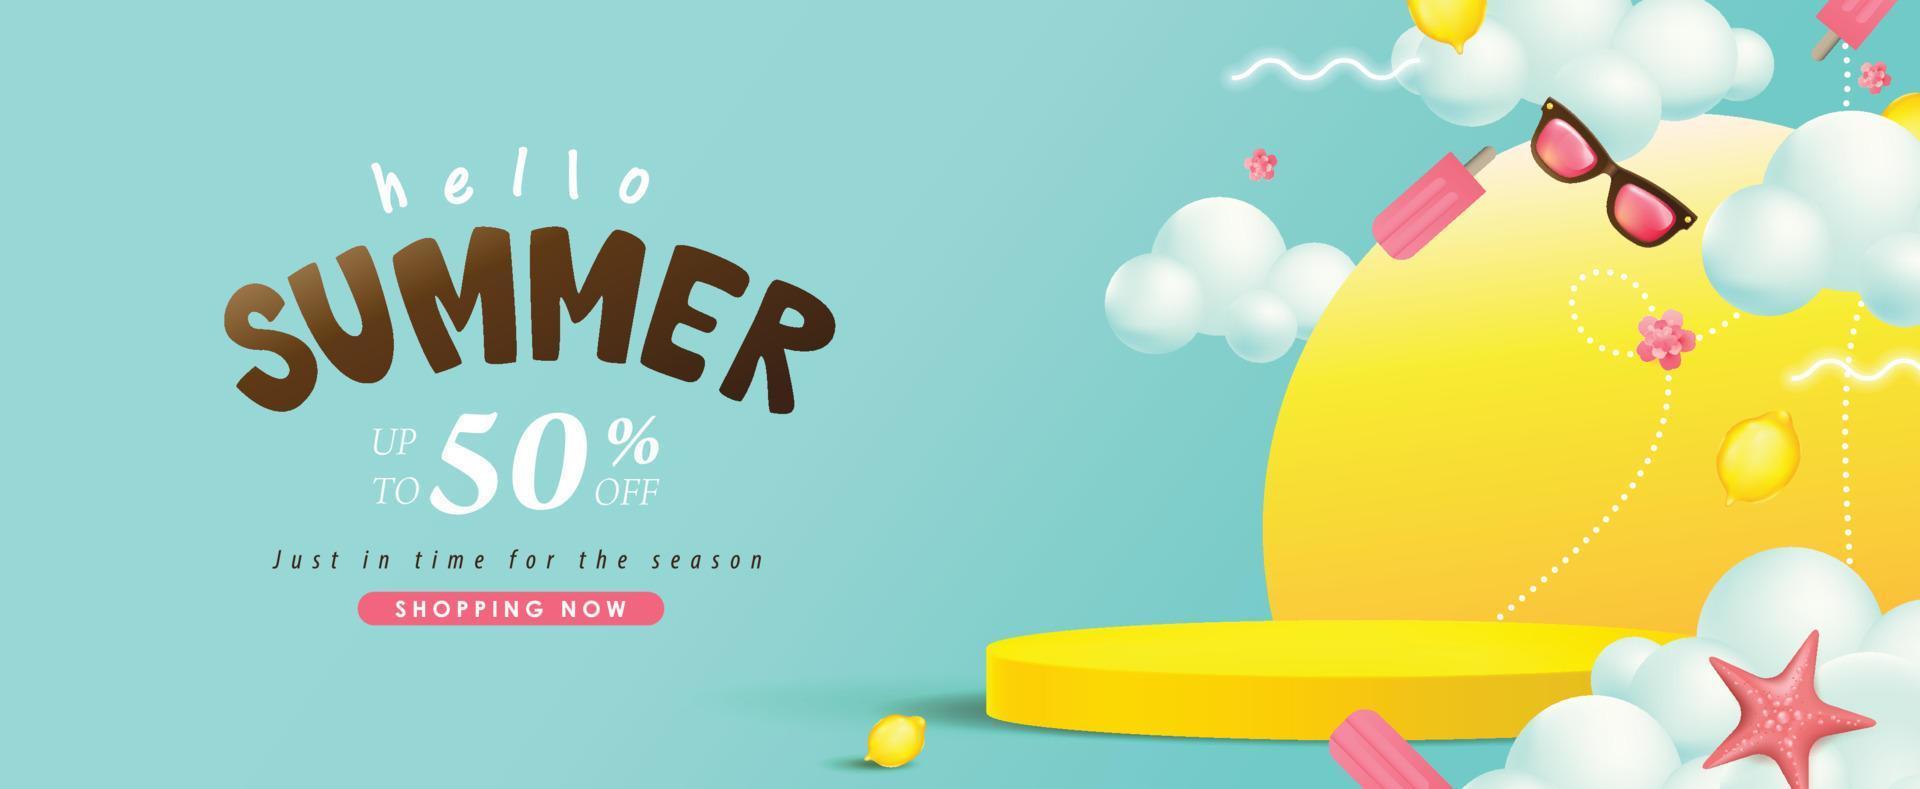 banner de venda de verão com exibição de produto em formato cilíndrico vetor